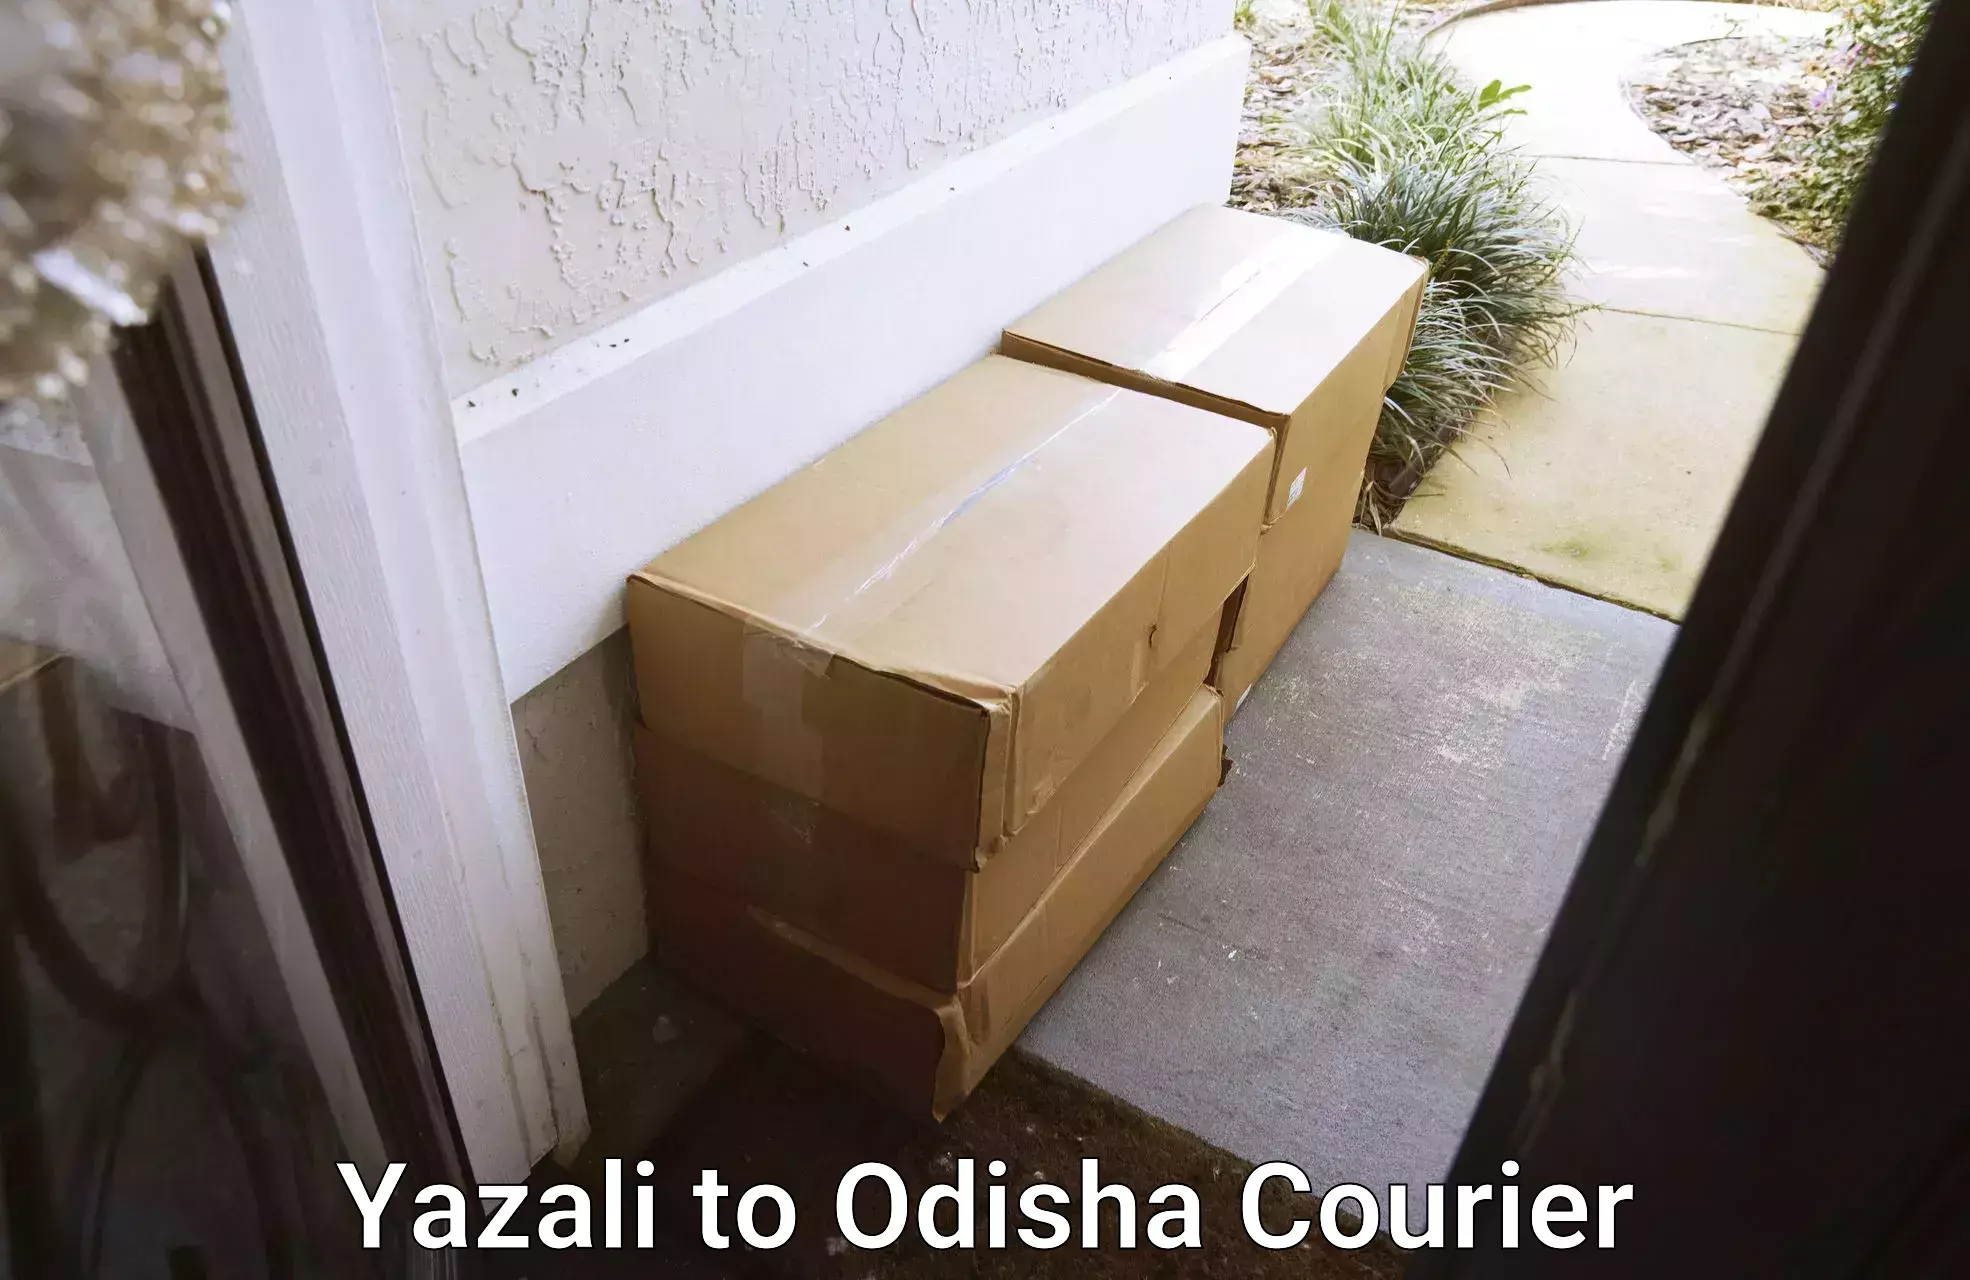 Efficient parcel tracking Yazali to Lamtaput